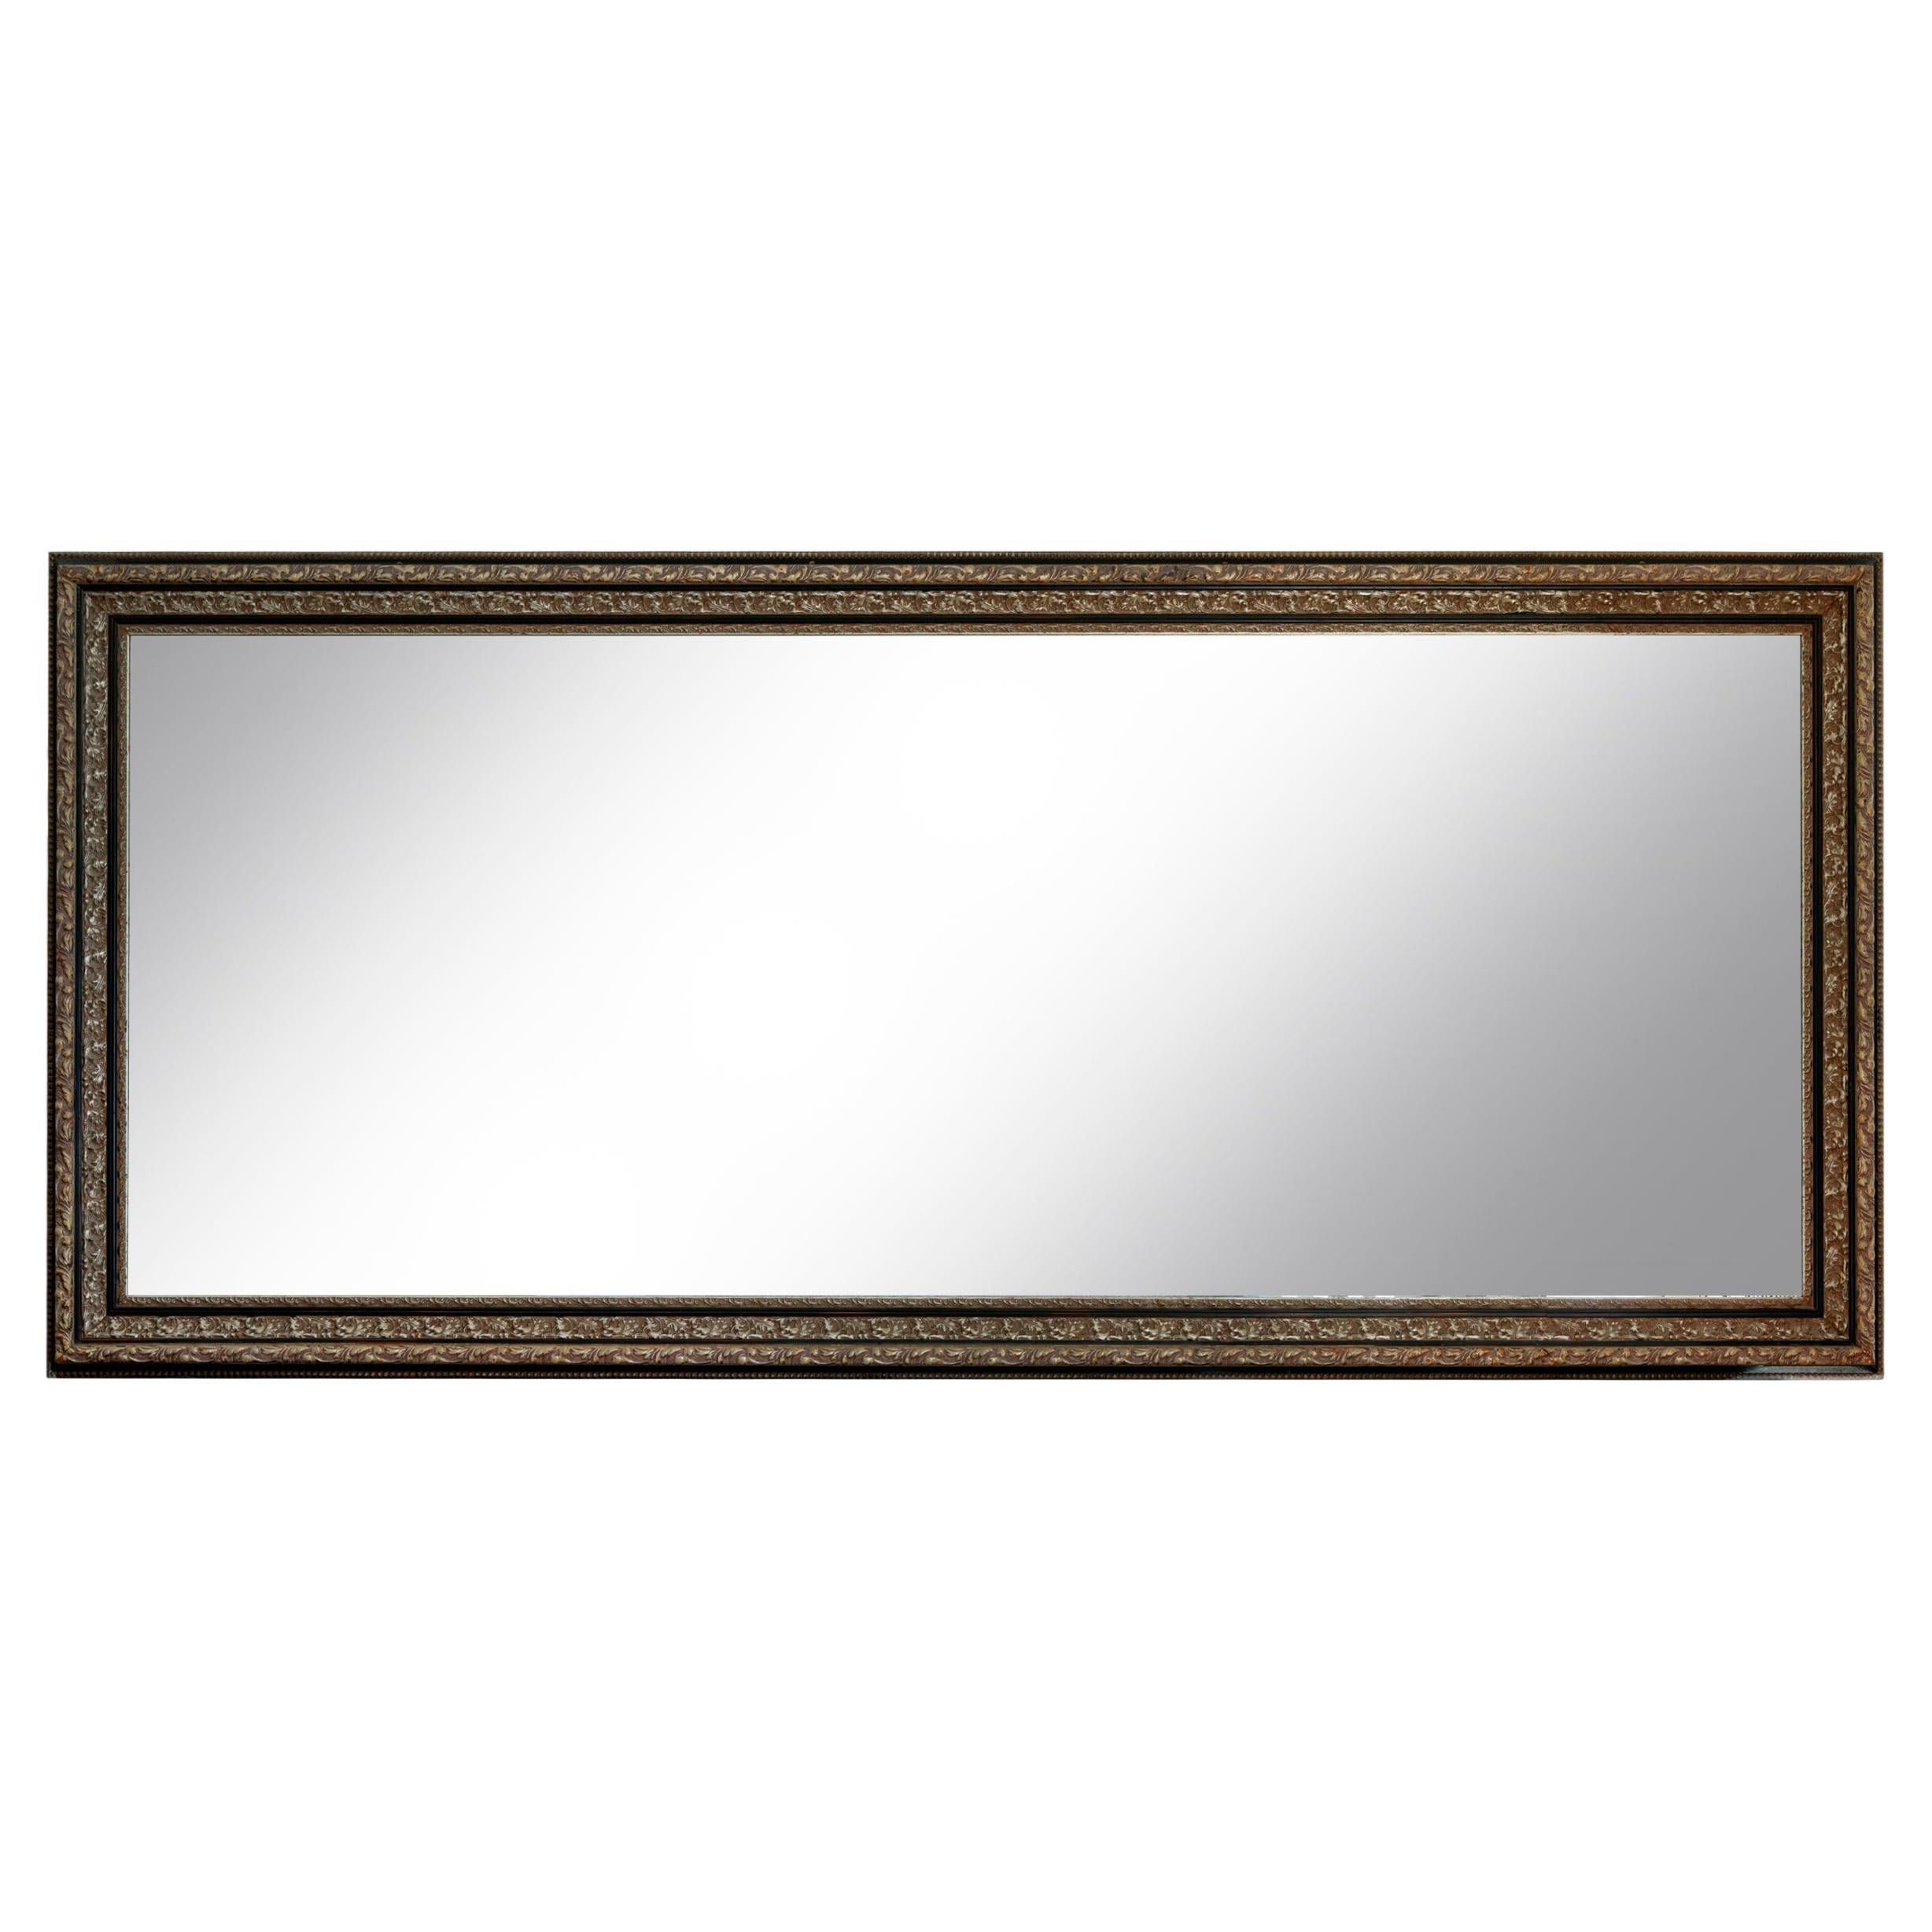 Ein monumentaler rechteckiger Spiegel aus vergoldetem Silberblatt und geschnitztem Holz. Der lange schmale rechteckige Spiegel hat einen schönen geschnitzten Rahmen. Ein wichtiges Stück für einen großen Raum als stehender Bodenspiegel oder